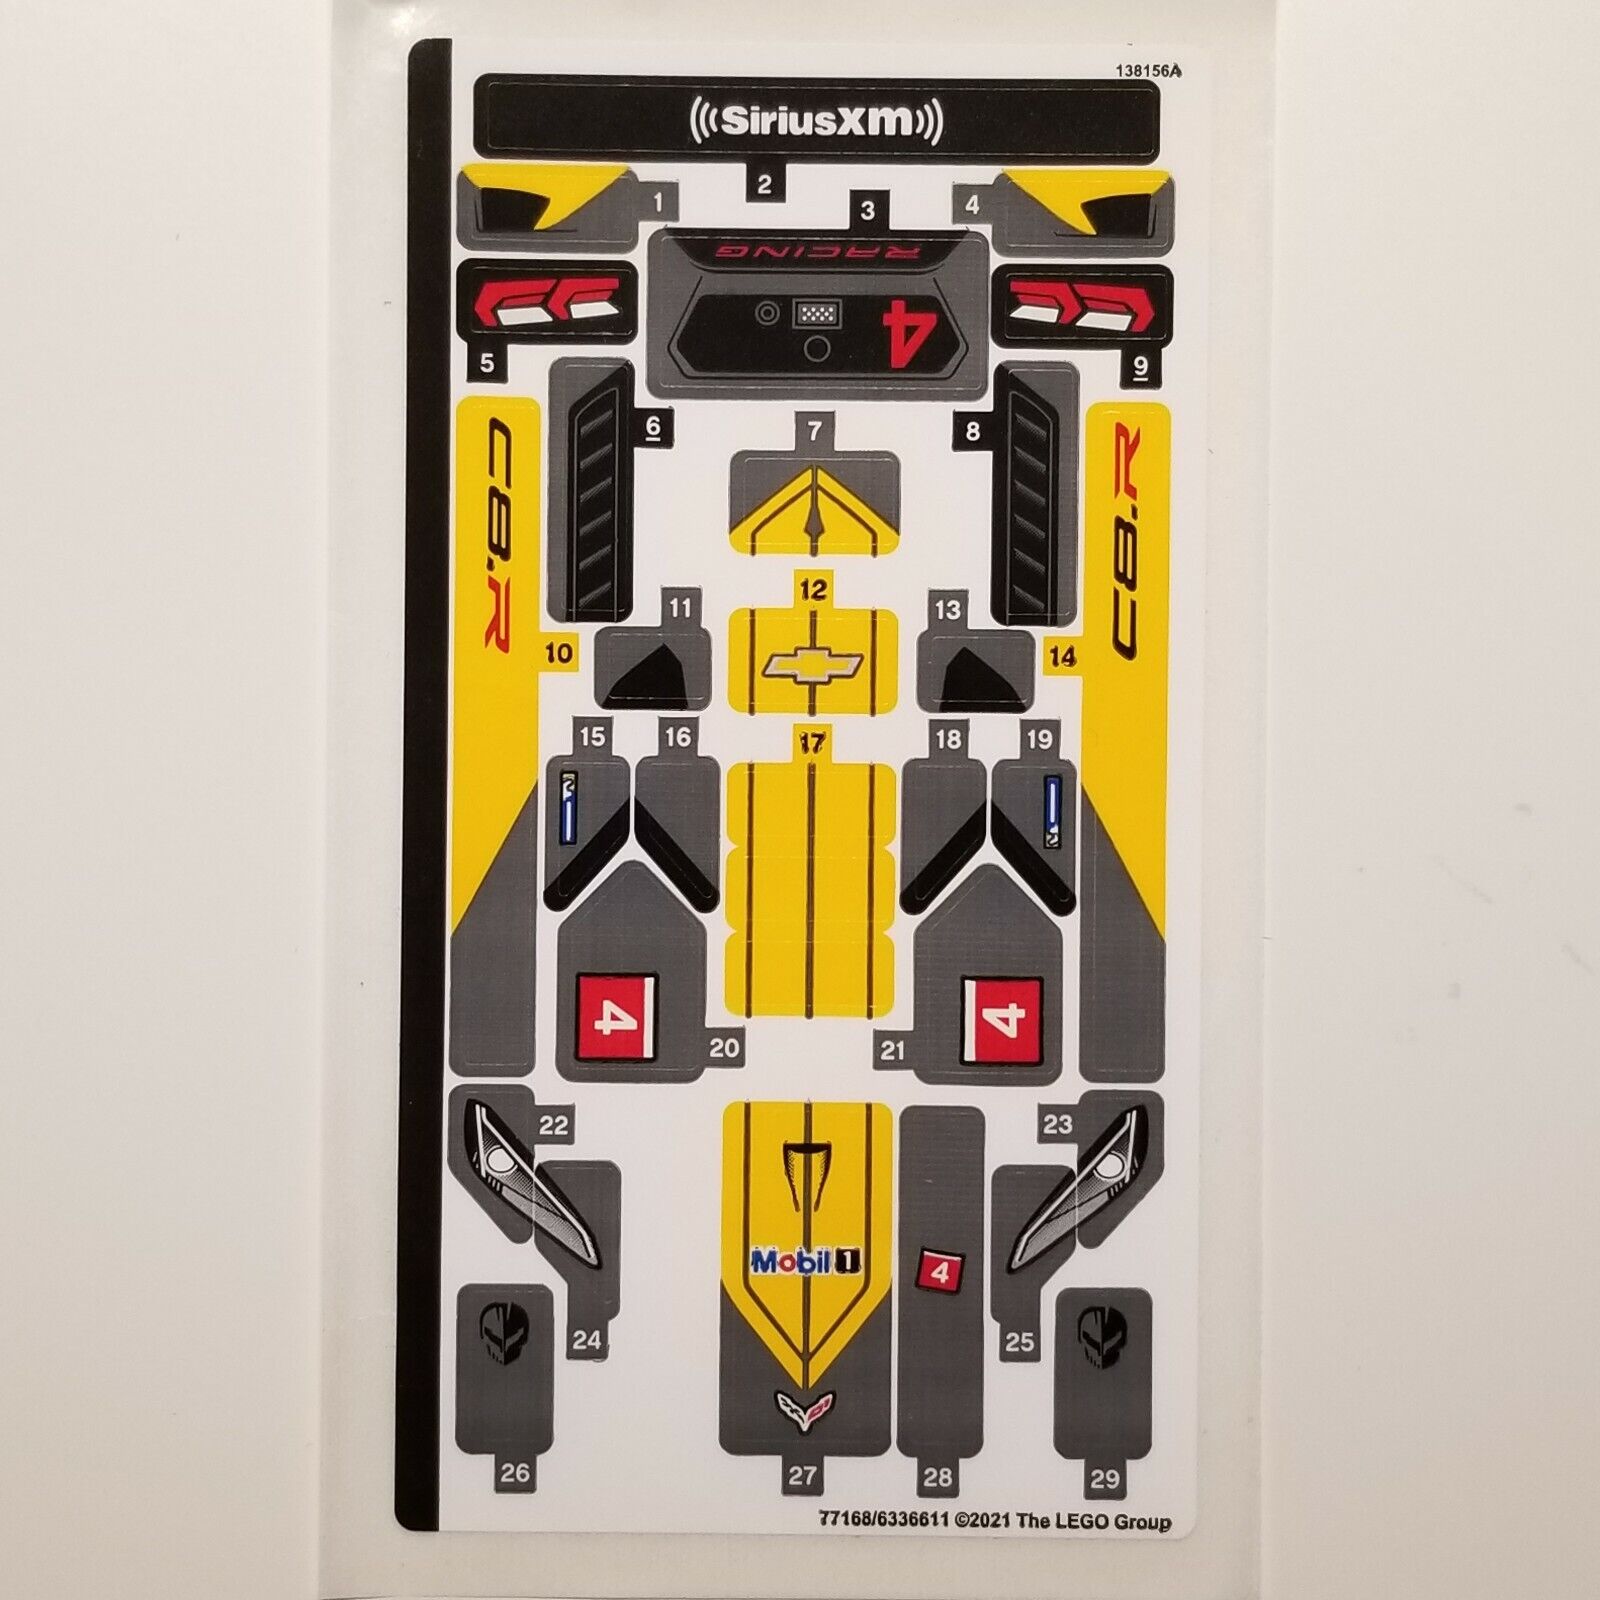 NEW LEGO | Sticker Sheet for Set 76903, Sheet 1 - (77168/6336611) Corvette C8.R